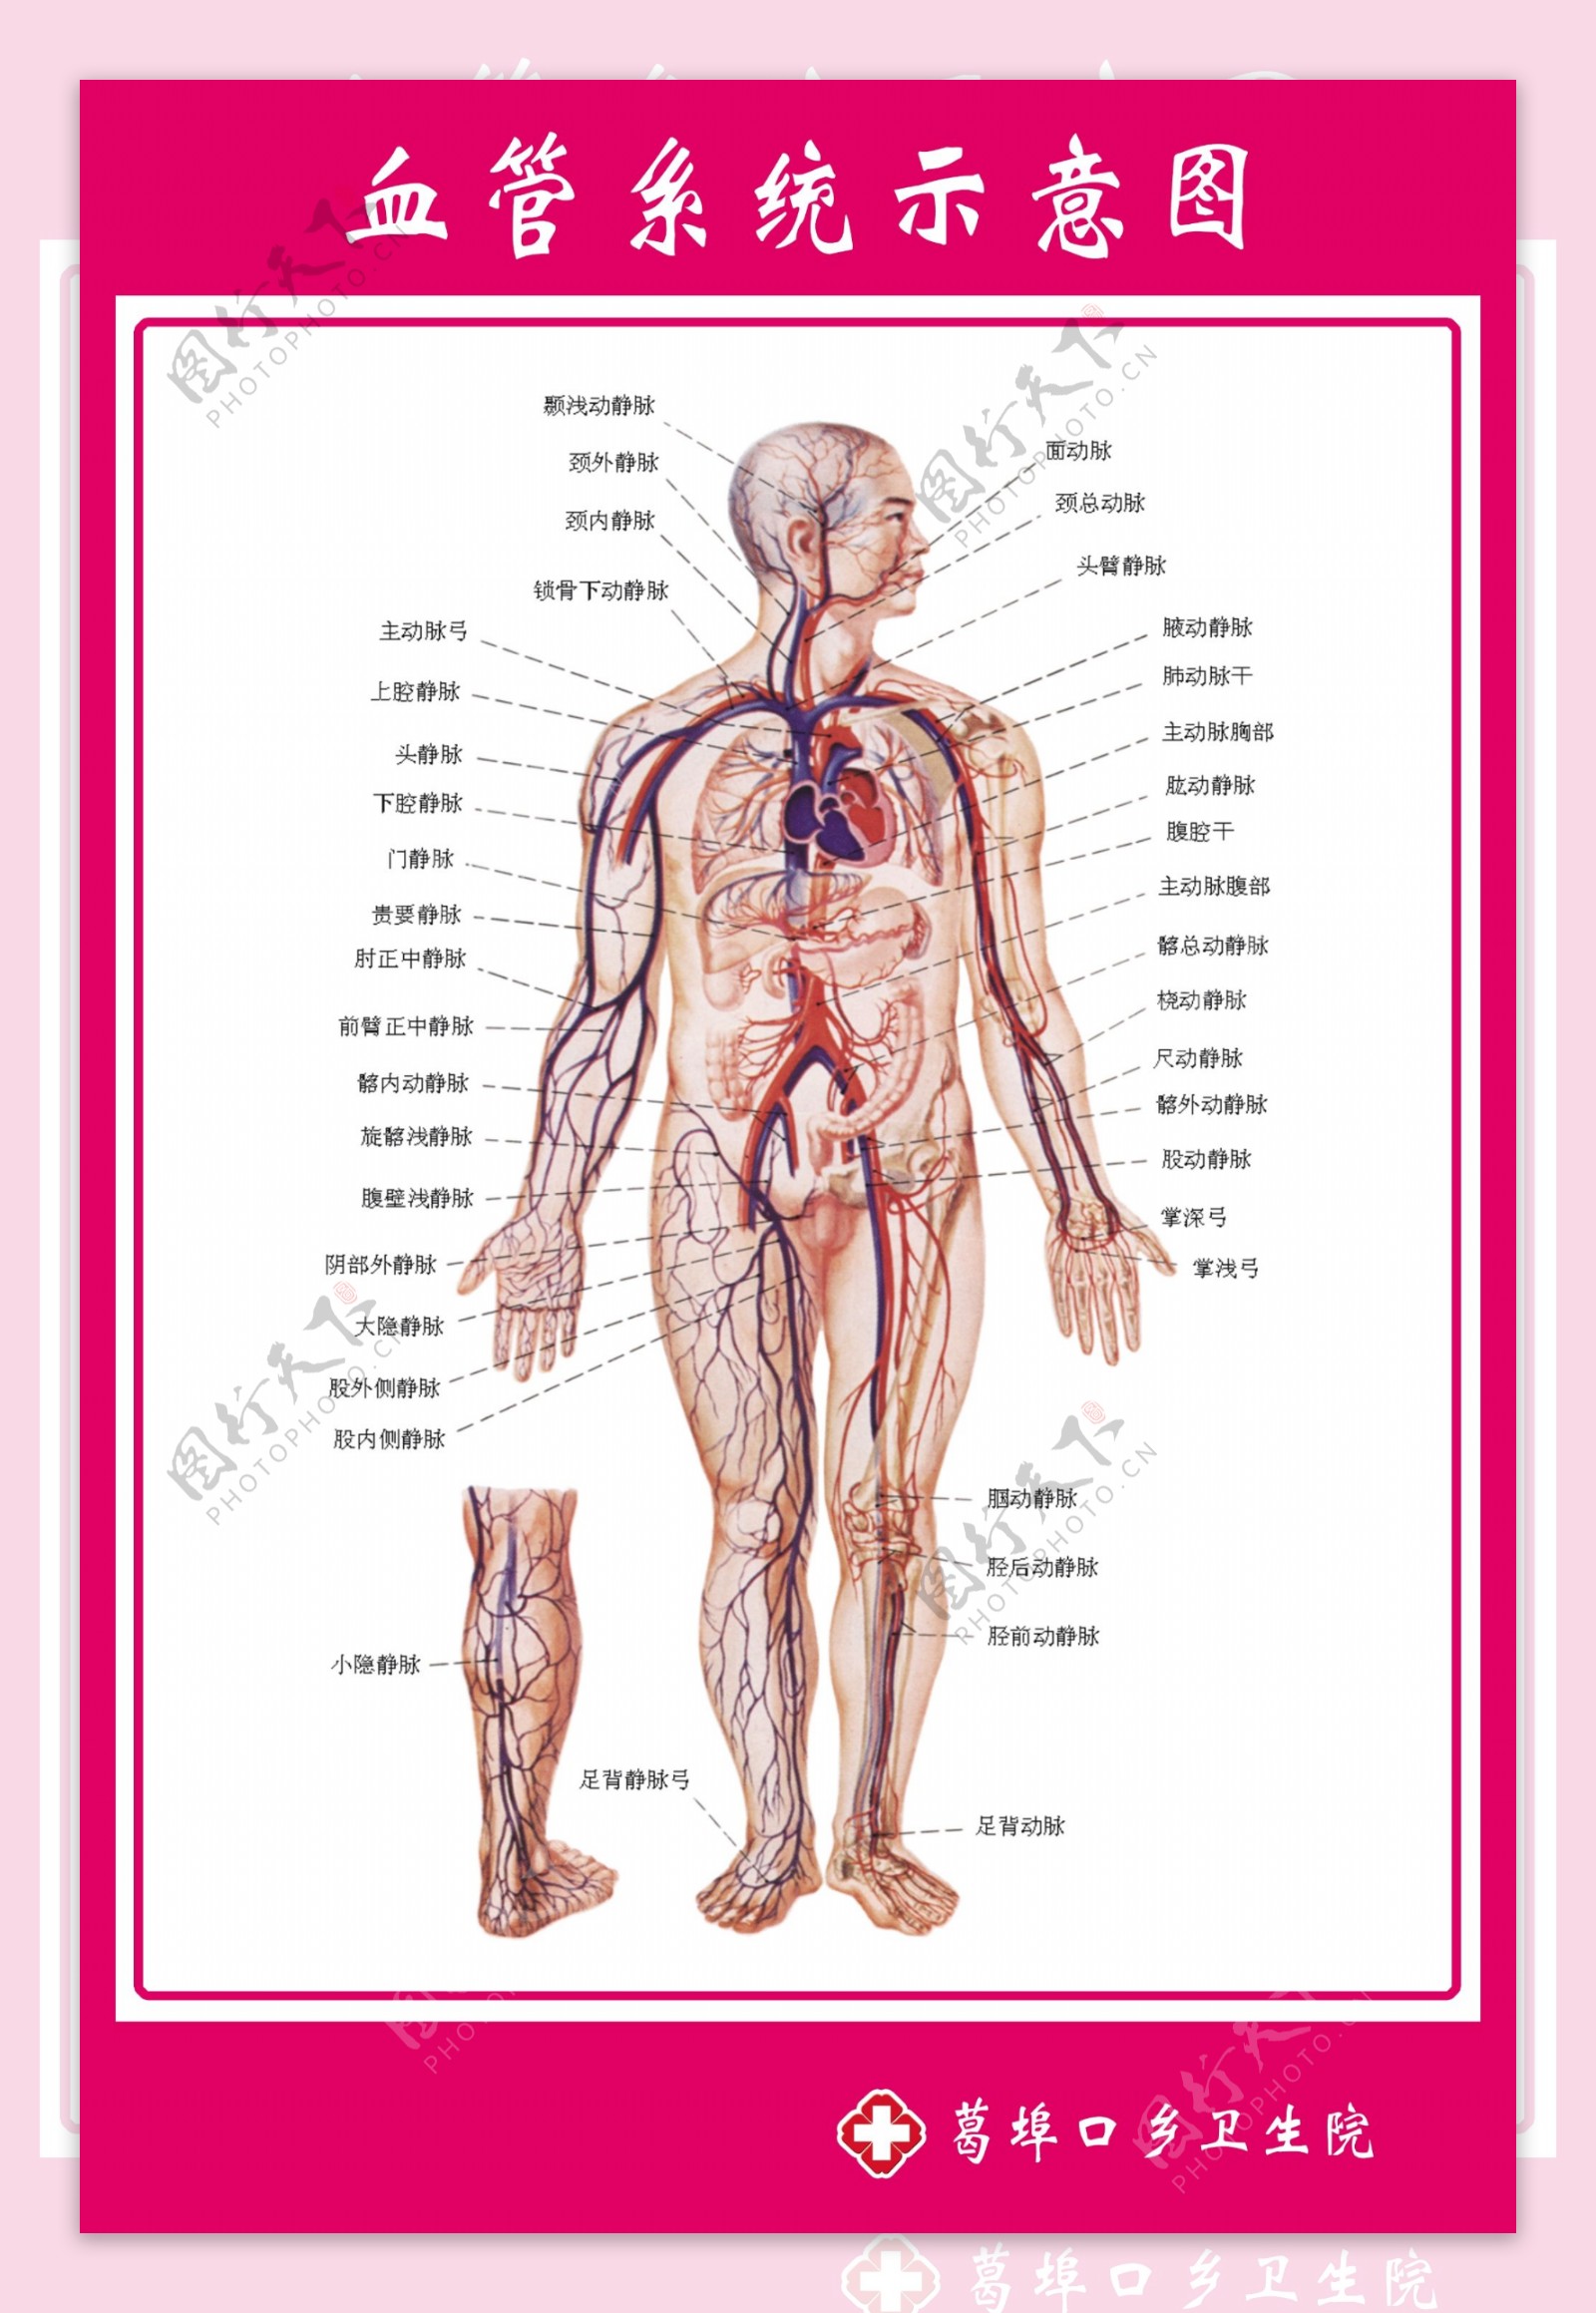 血管系统示意图图片